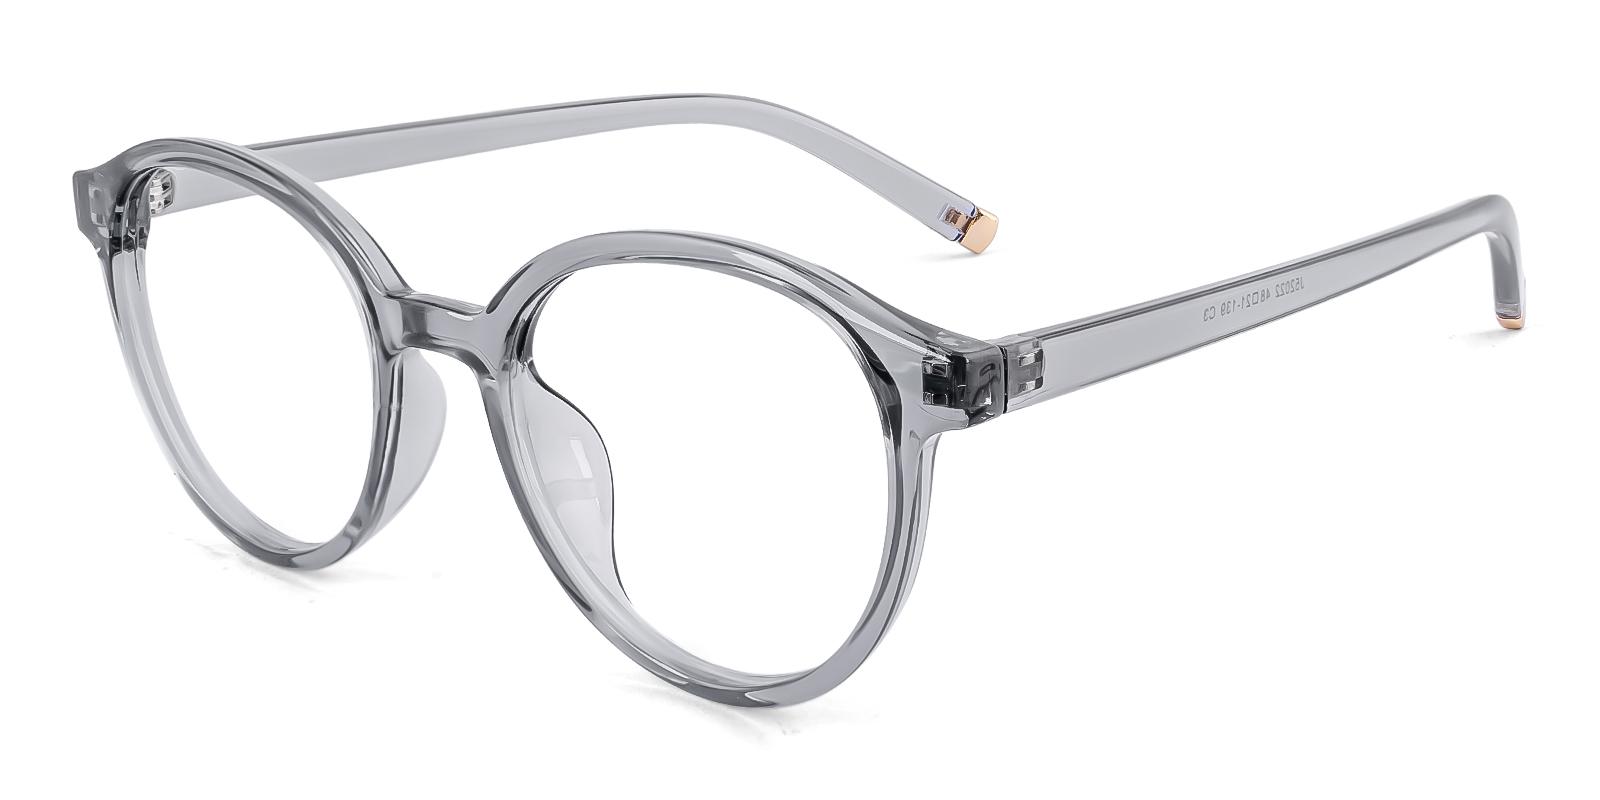 Cellery Gray Plastic Eyeglasses , UniversalBridgeFit Frames from ABBE Glasses